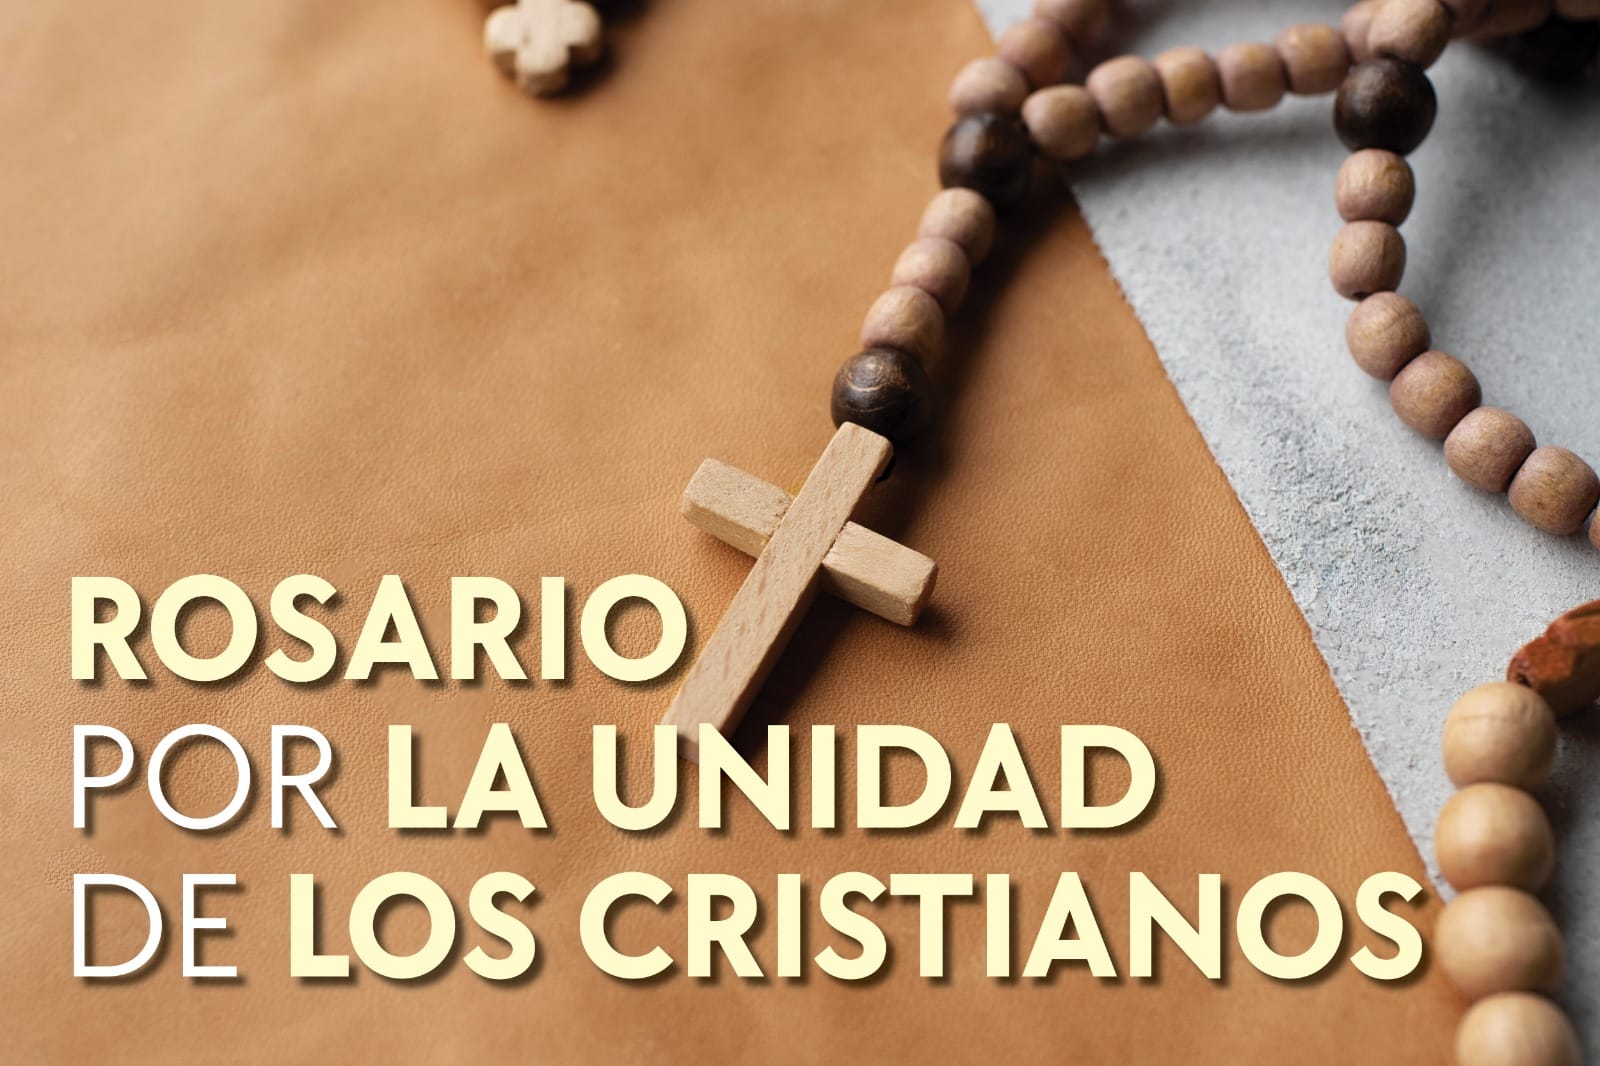 Rosario por la unidad de los cristianos